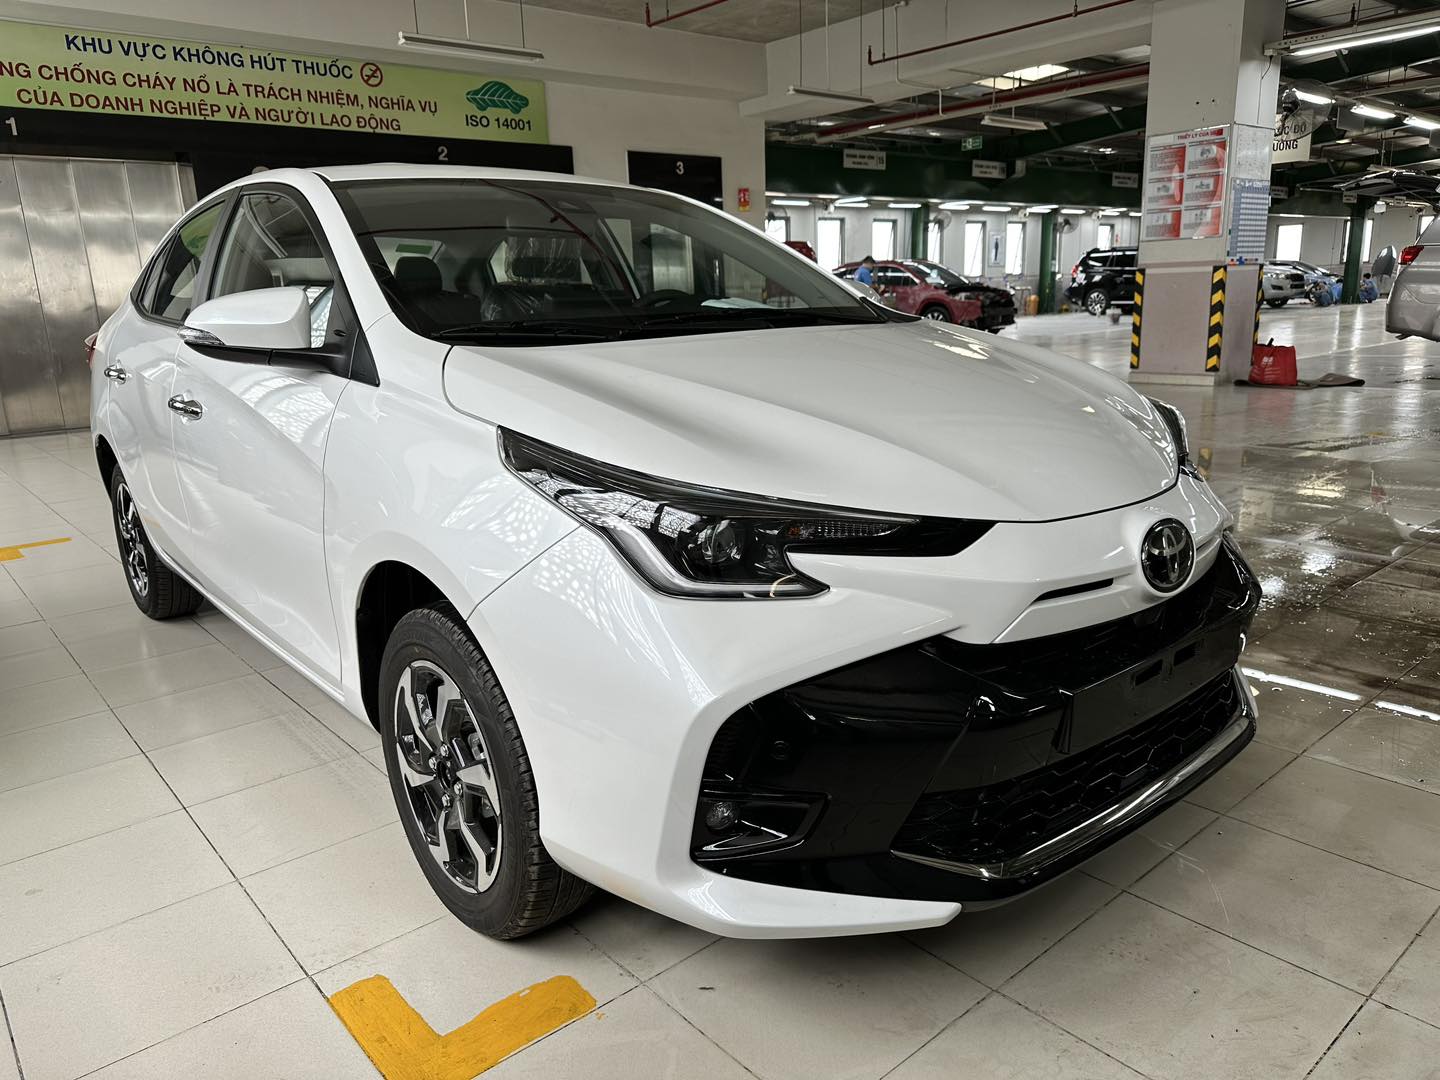 Thêm ảnh Toyota Vios 2023 tại đại lý: Liệu có lấy lại được ngôi vương doanh số? toyota-vios-2023-6-1.jpg